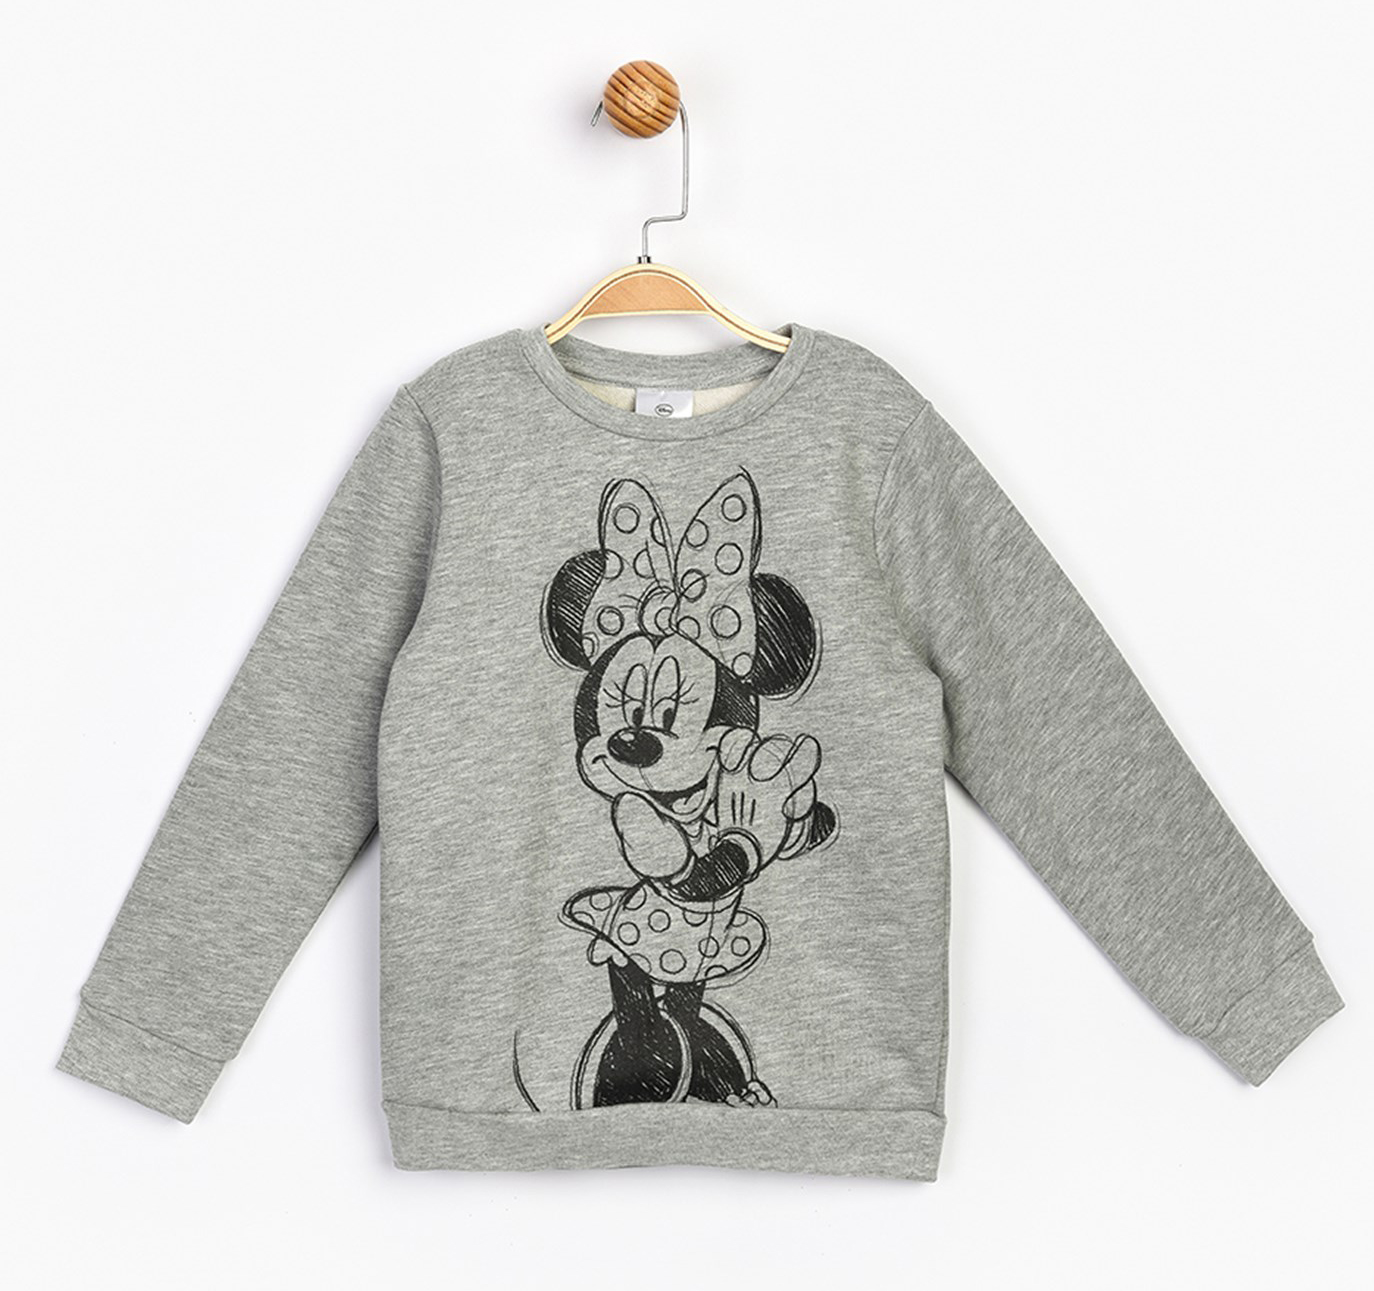 Акция на Свитшот Disney Minnie Mouse MN17218 98 см Серый (8691109860255) от Rozetka UA